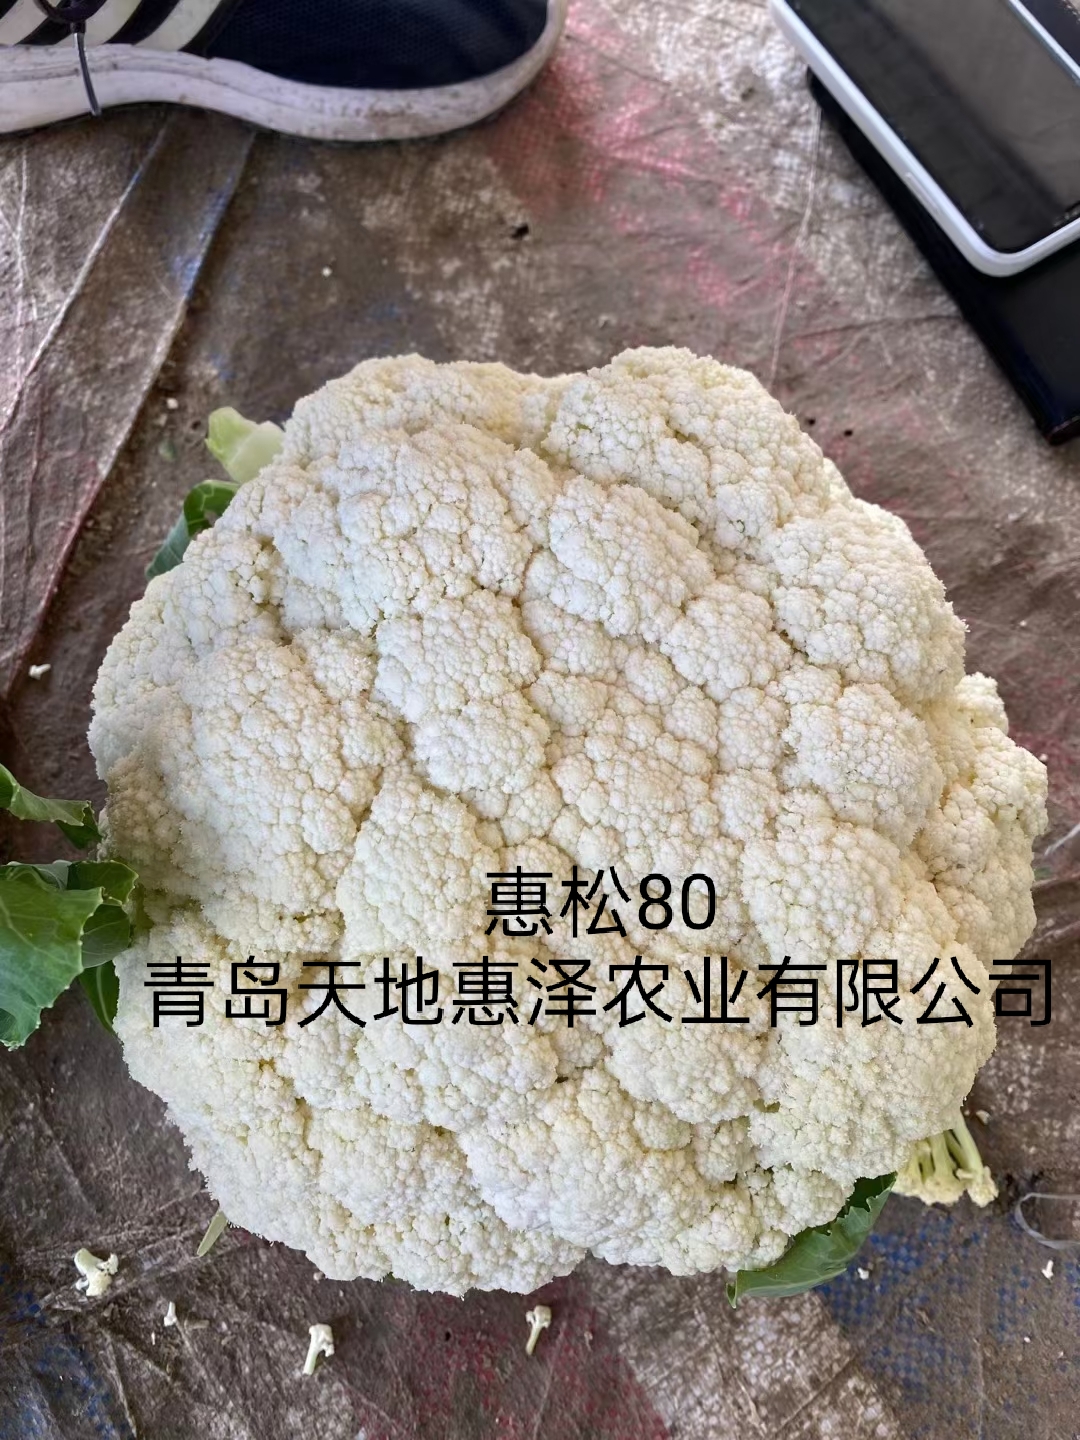 山东青岛惠松80菜花种子批发公司销售价格 惠松80种子